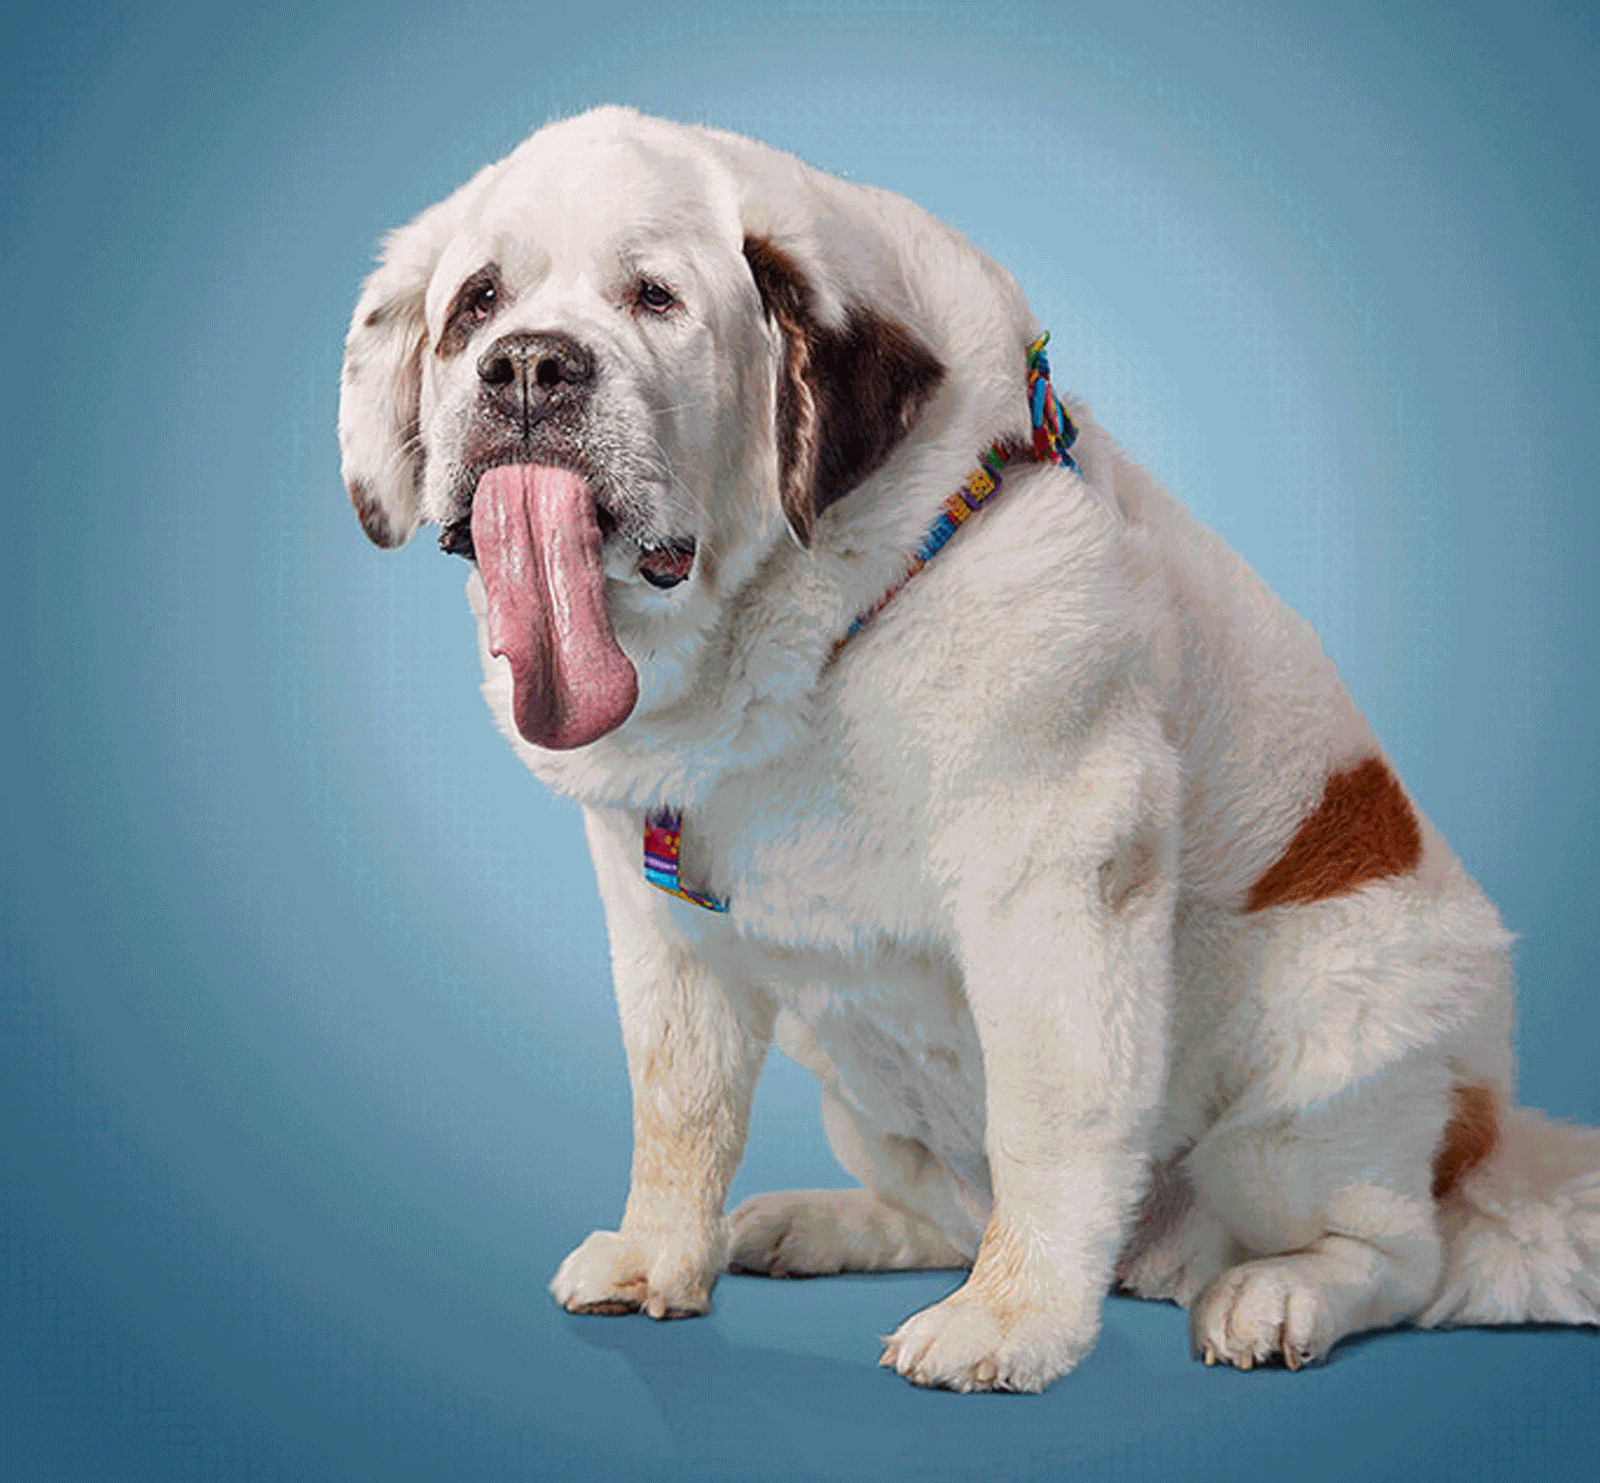 A cachorrinha Mochi “Mo” Rickert (Foto: Livro Guinness de Recordes)